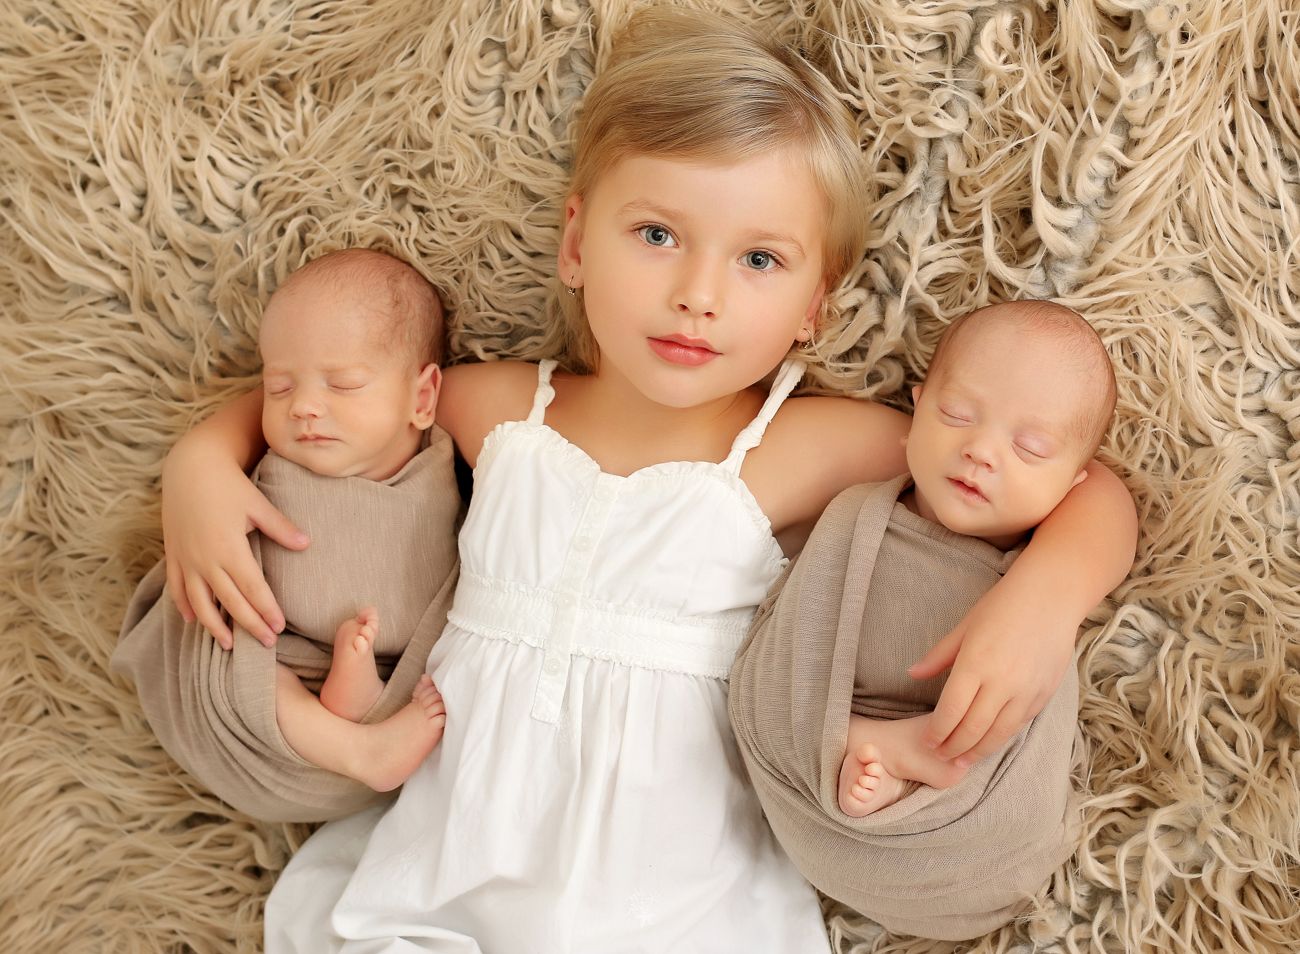 Newborn fotografie sourozenců - dvojčata se starší sestrou | © Fotoprome.cz